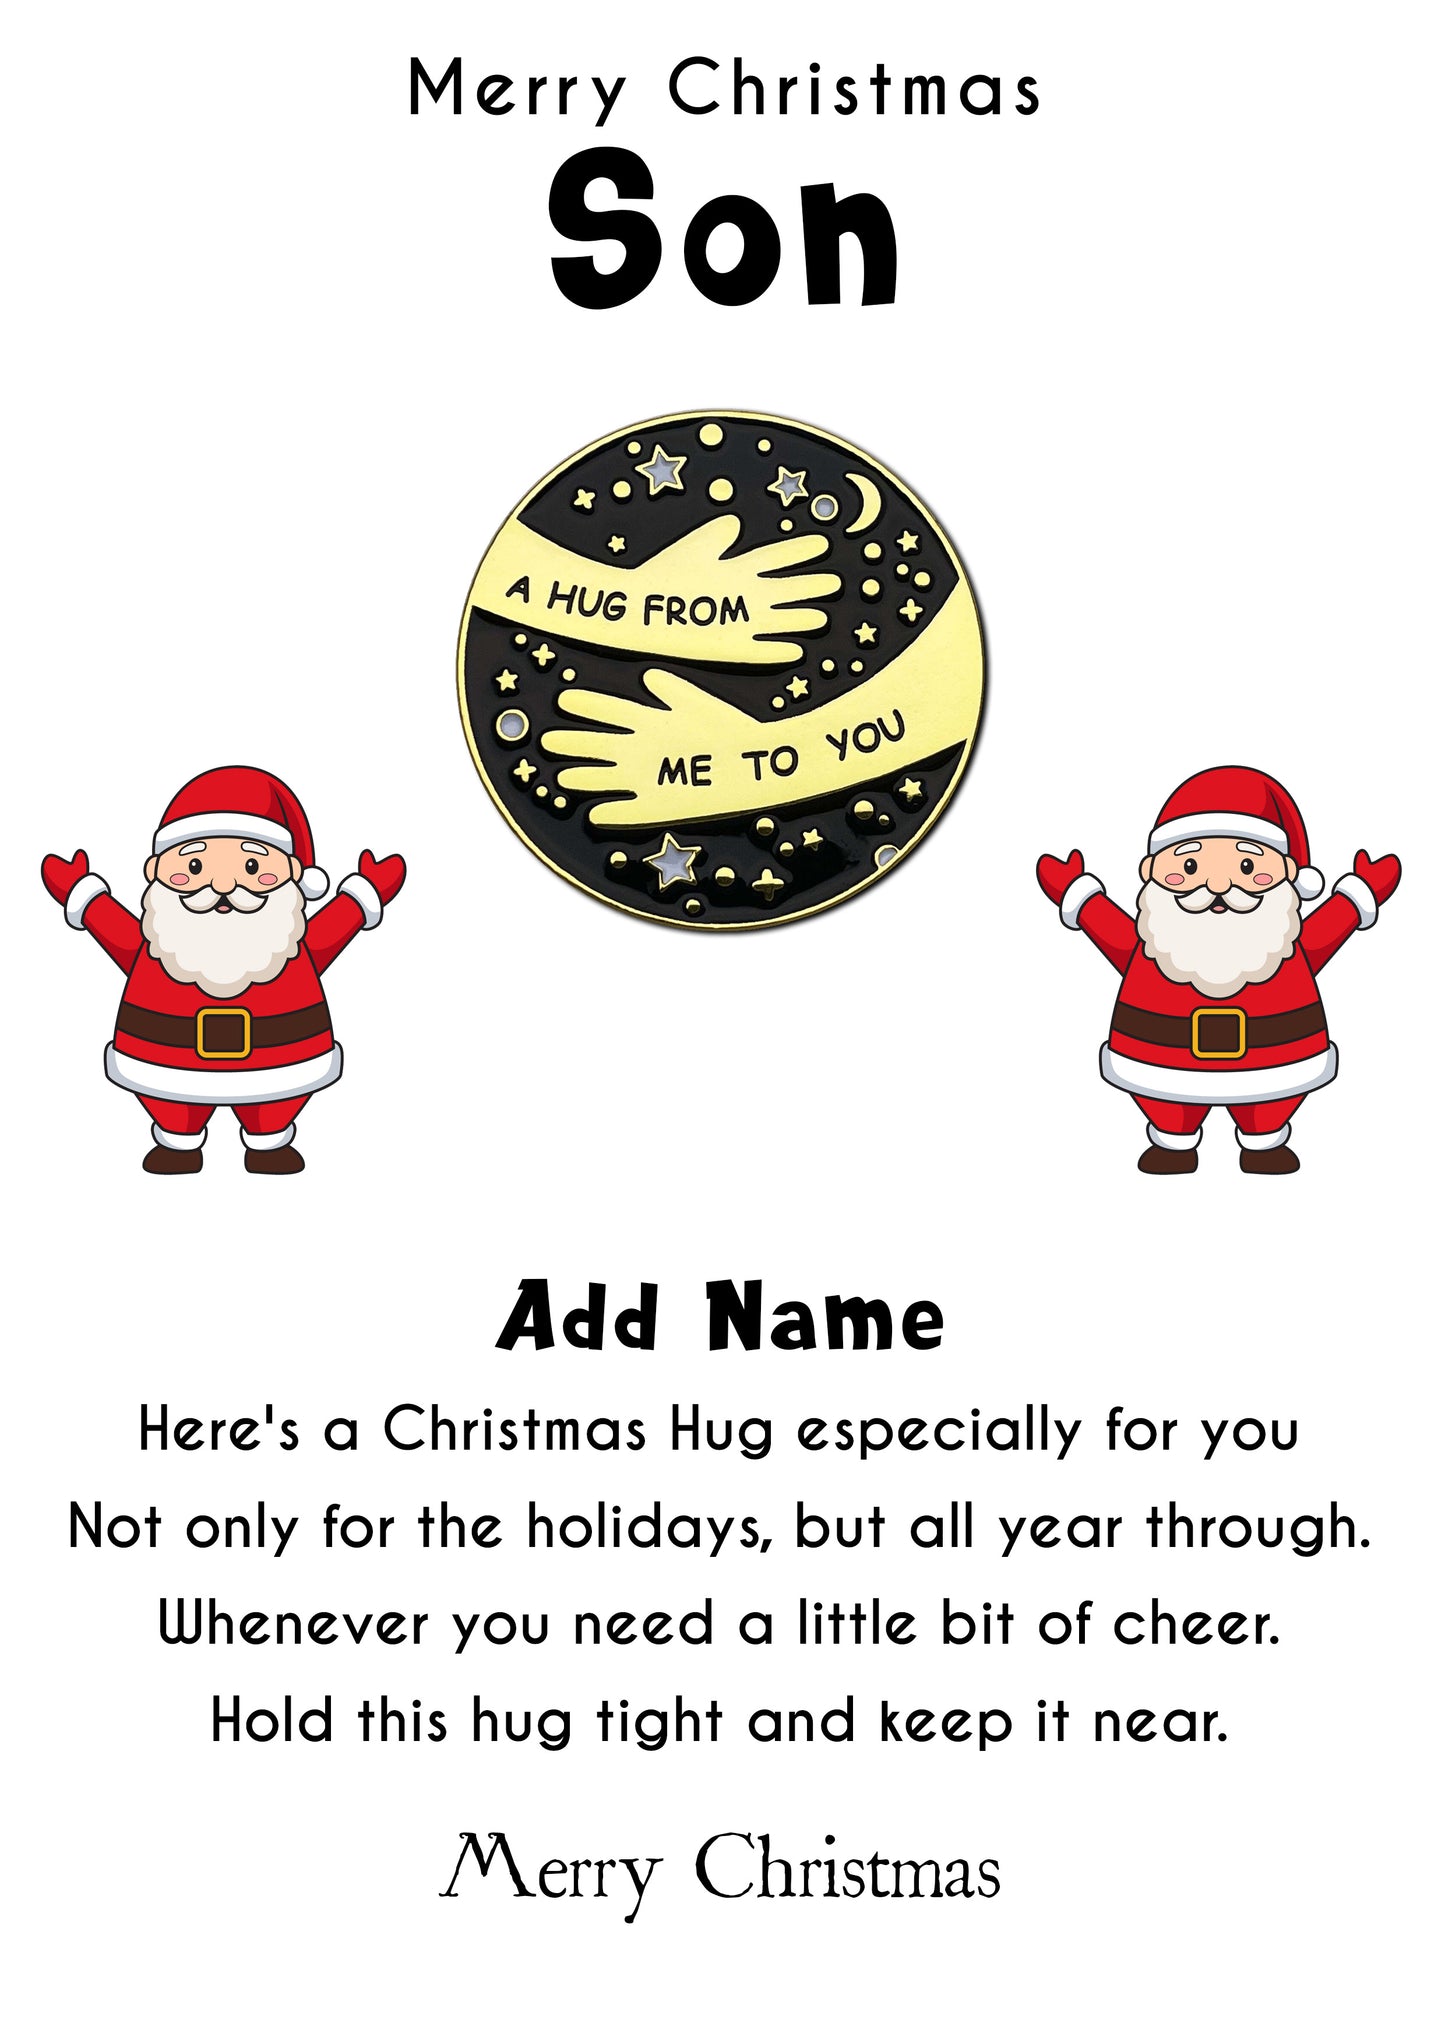 Santa Claus Hug Pin Badges & Personalised Son Message Card